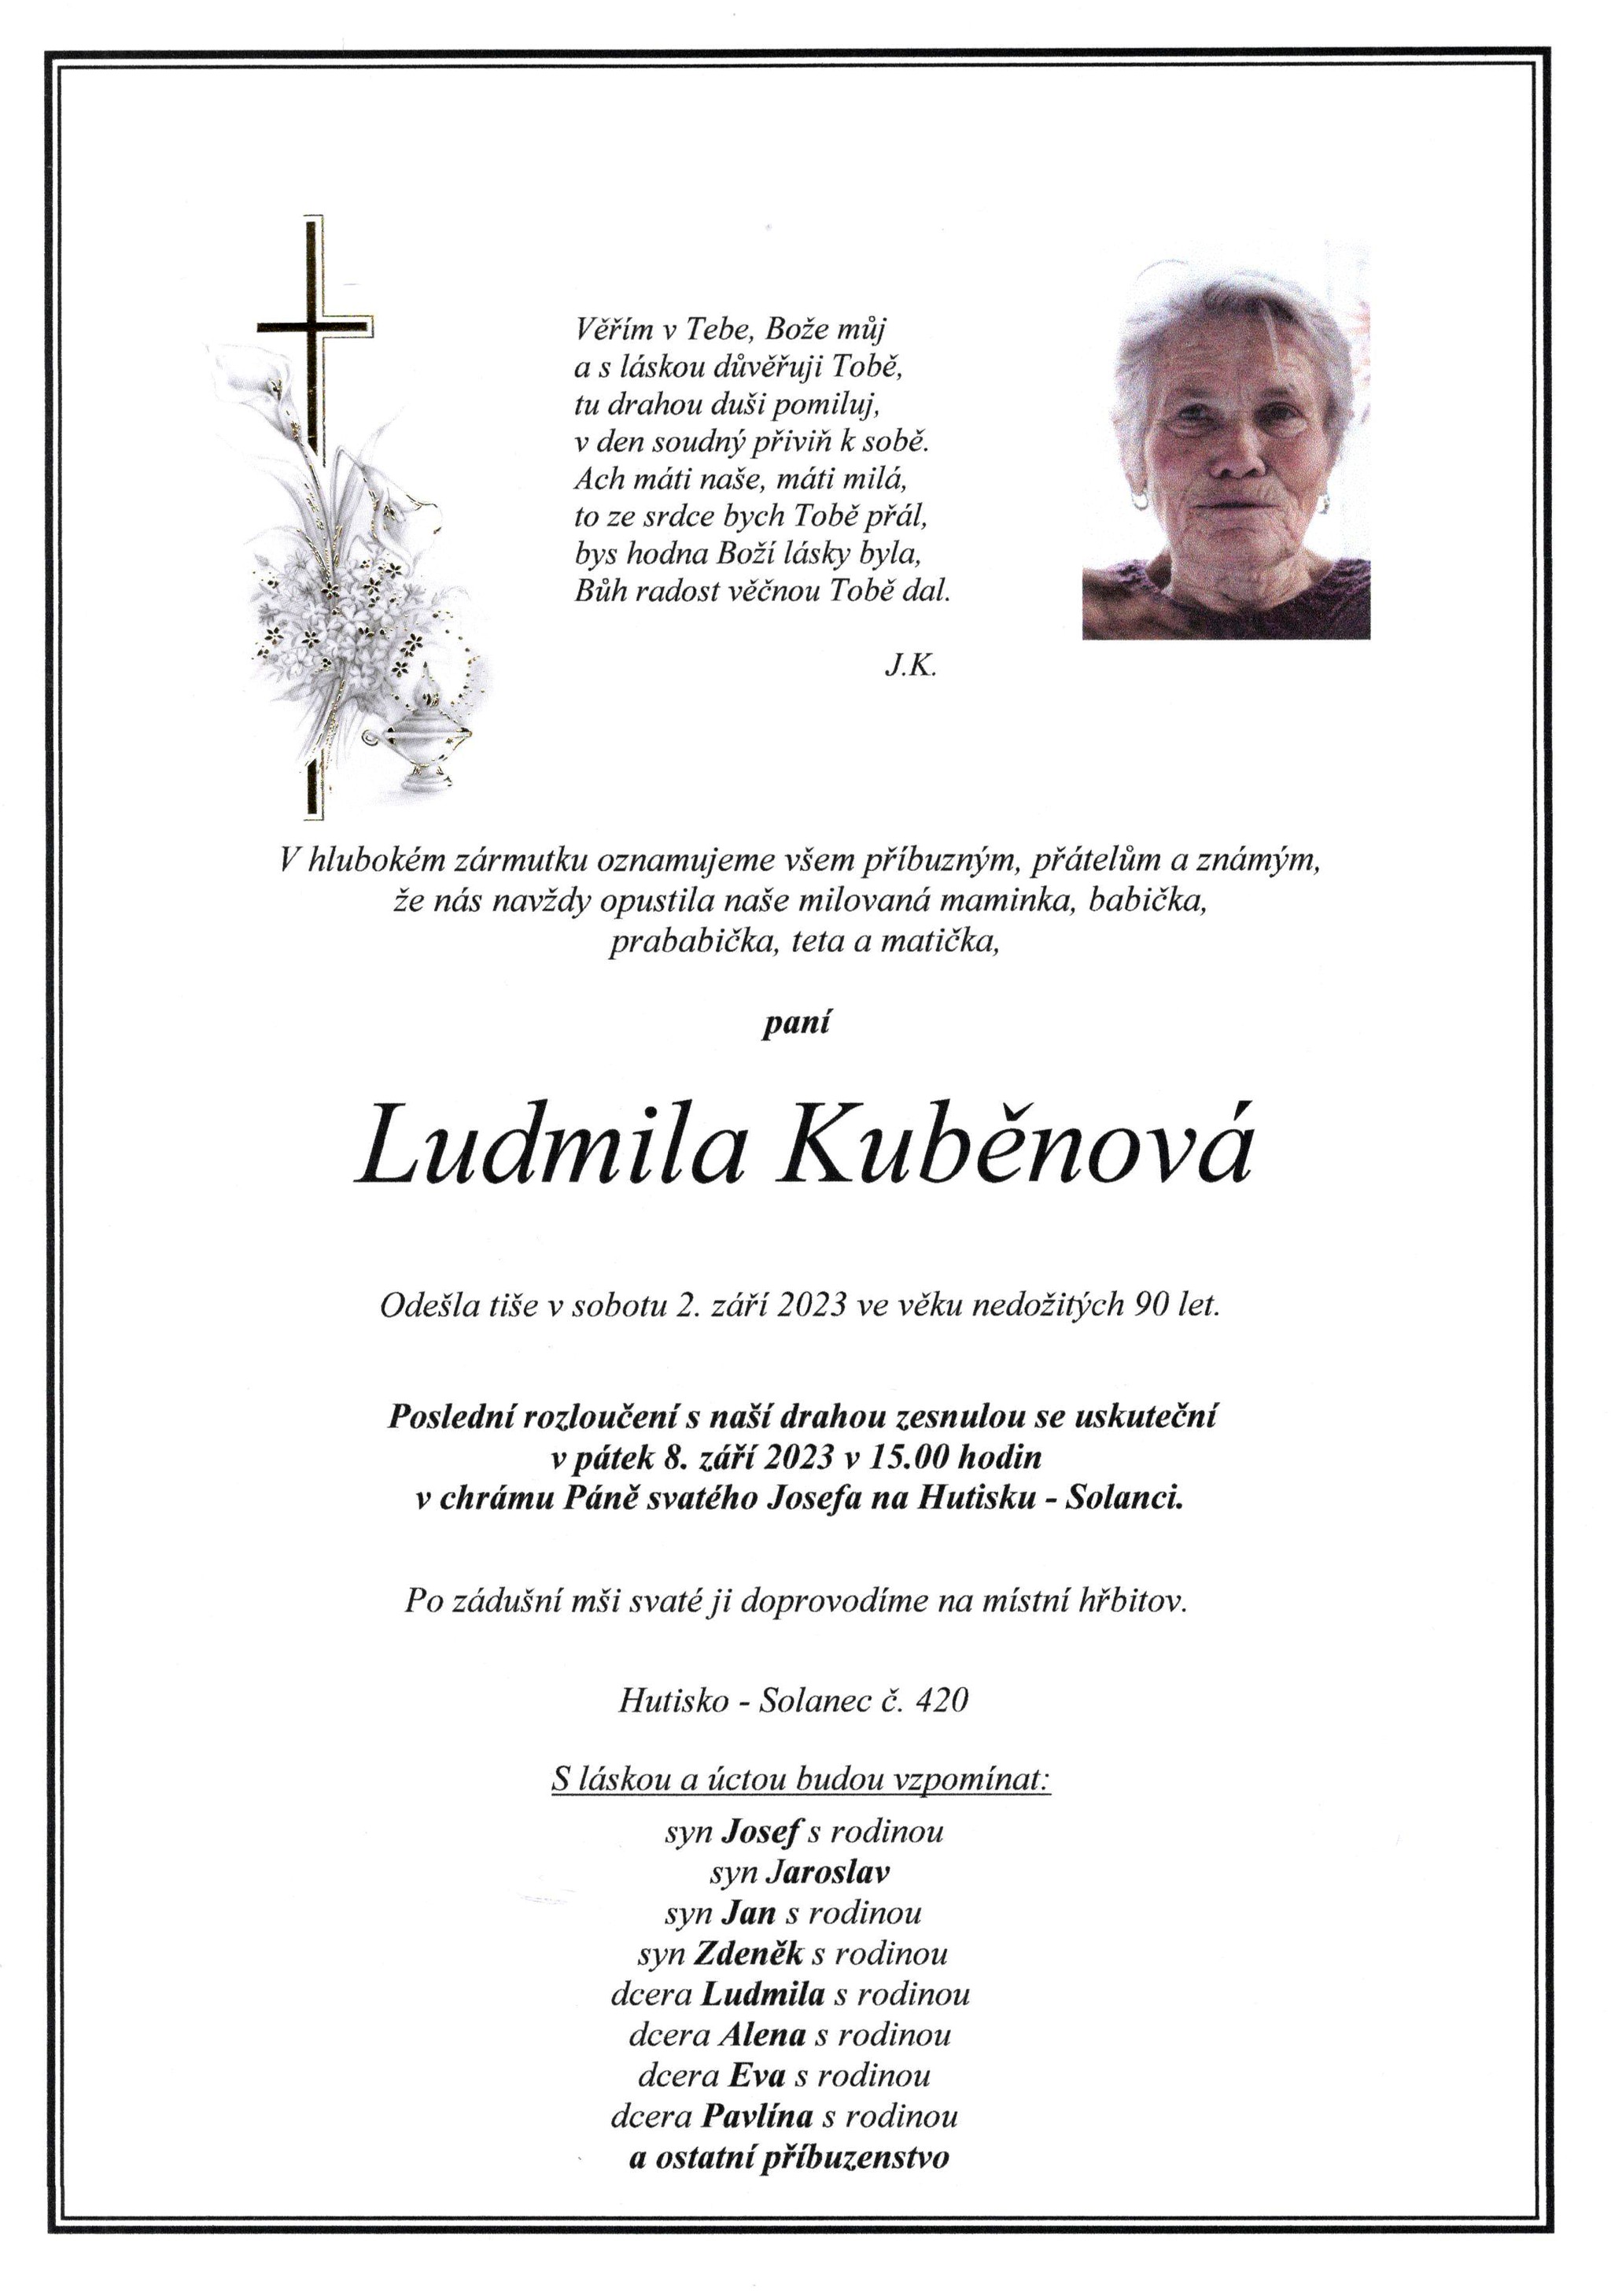 Ludmila Kuběnová